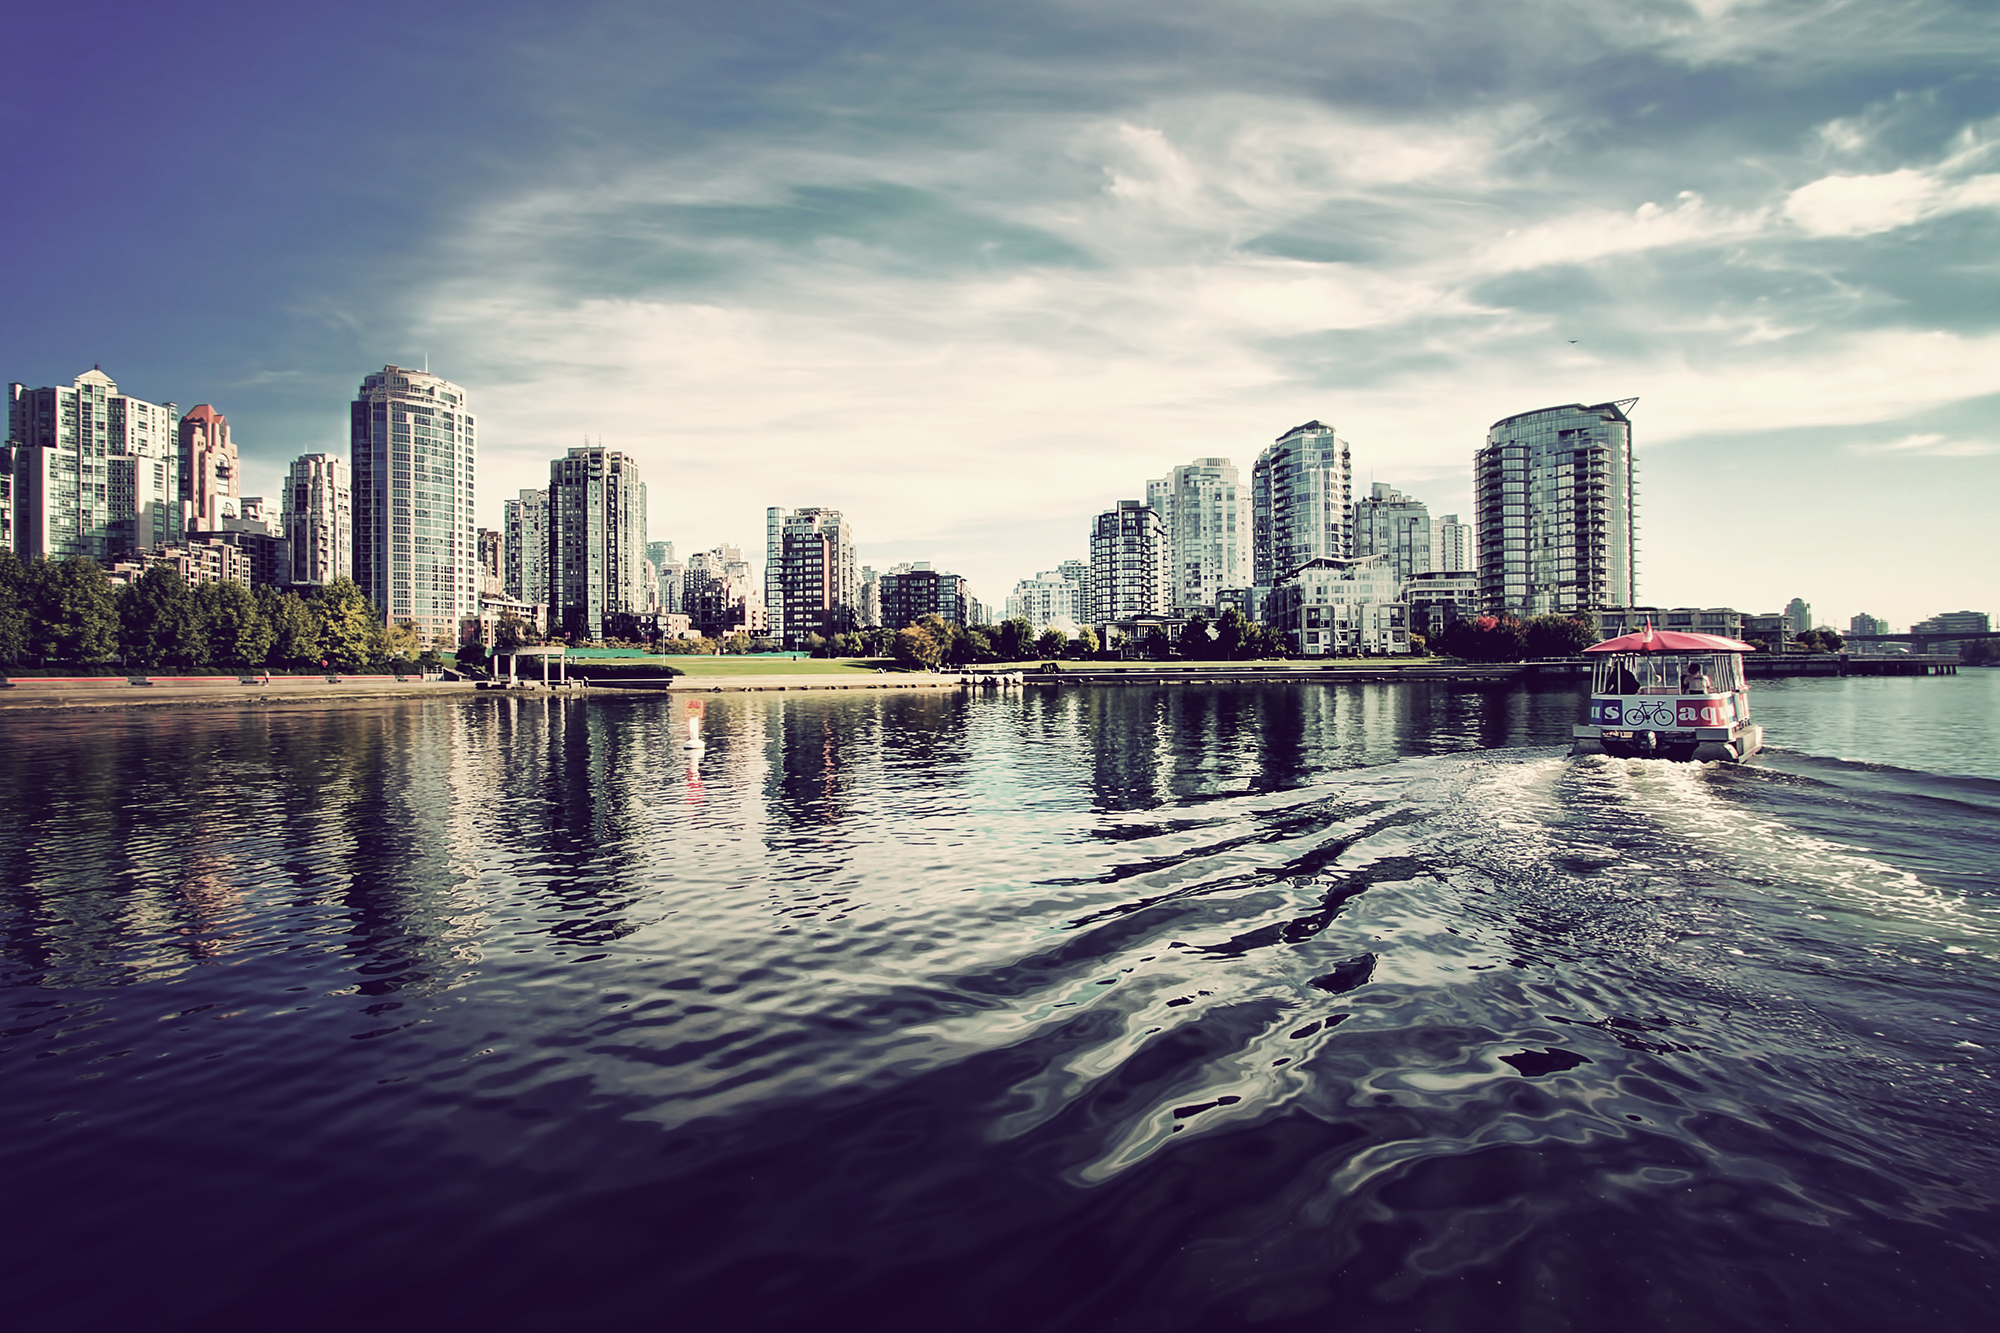 False Creek Aquabus, Vancouver BC - Photo by LocalPix.ca